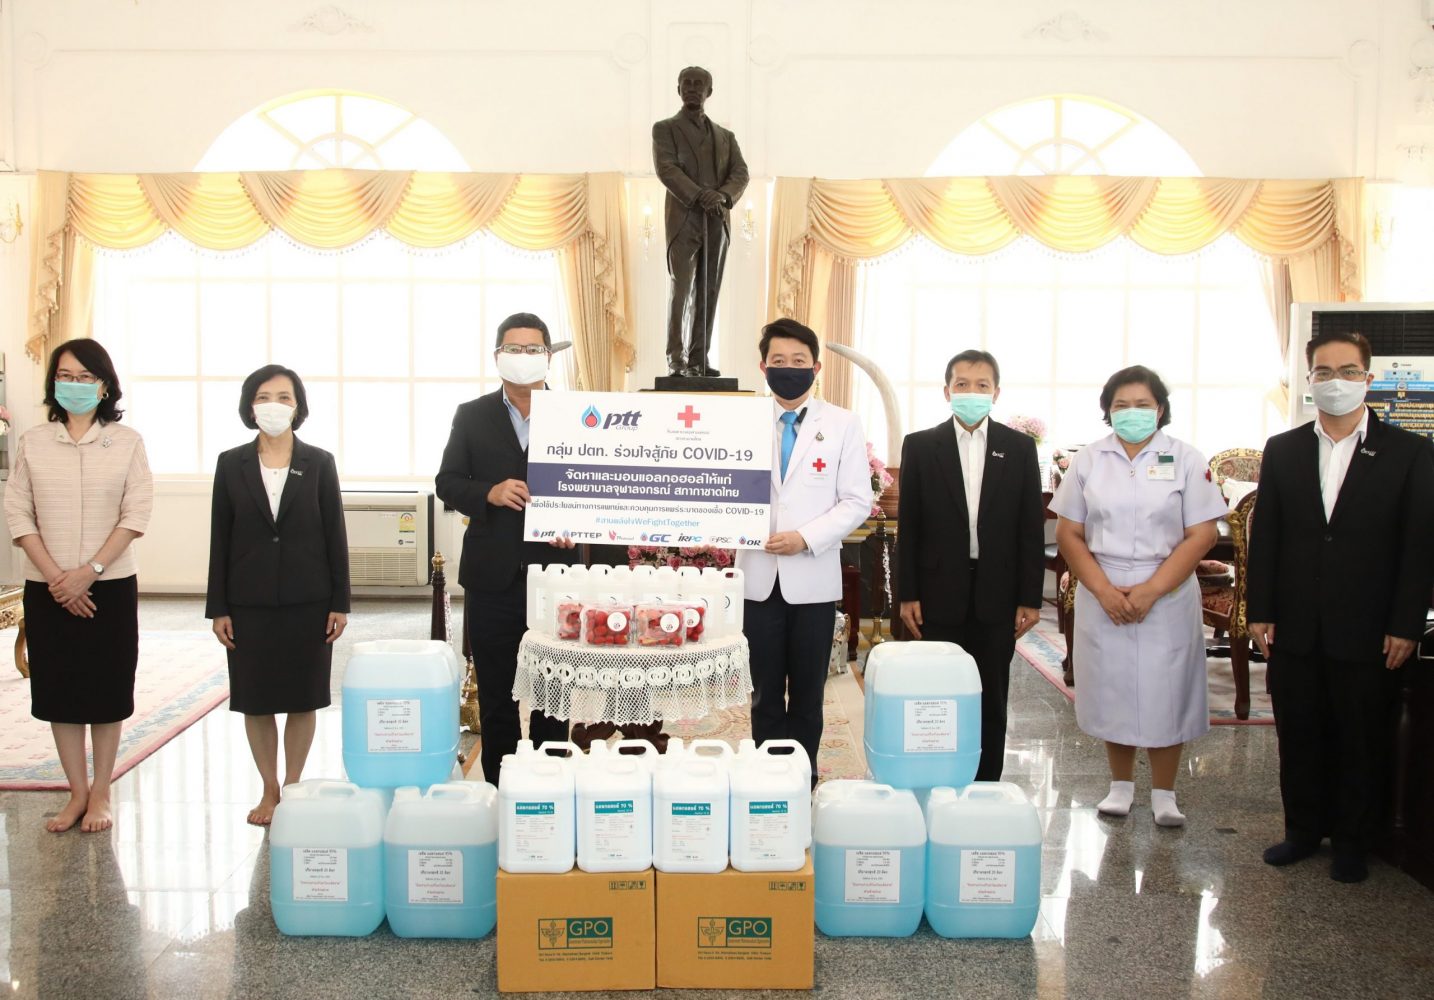 ภาพข่าว: กลุ่ม ปตท. ร่วมใจสู้ภัย COVID-19 สนับสนุนอุปกรณ์การแพทย์ และแอลกอฮอล์ แก่ รพ.จุฬาลงกรณ์ สภากาชาดไทย